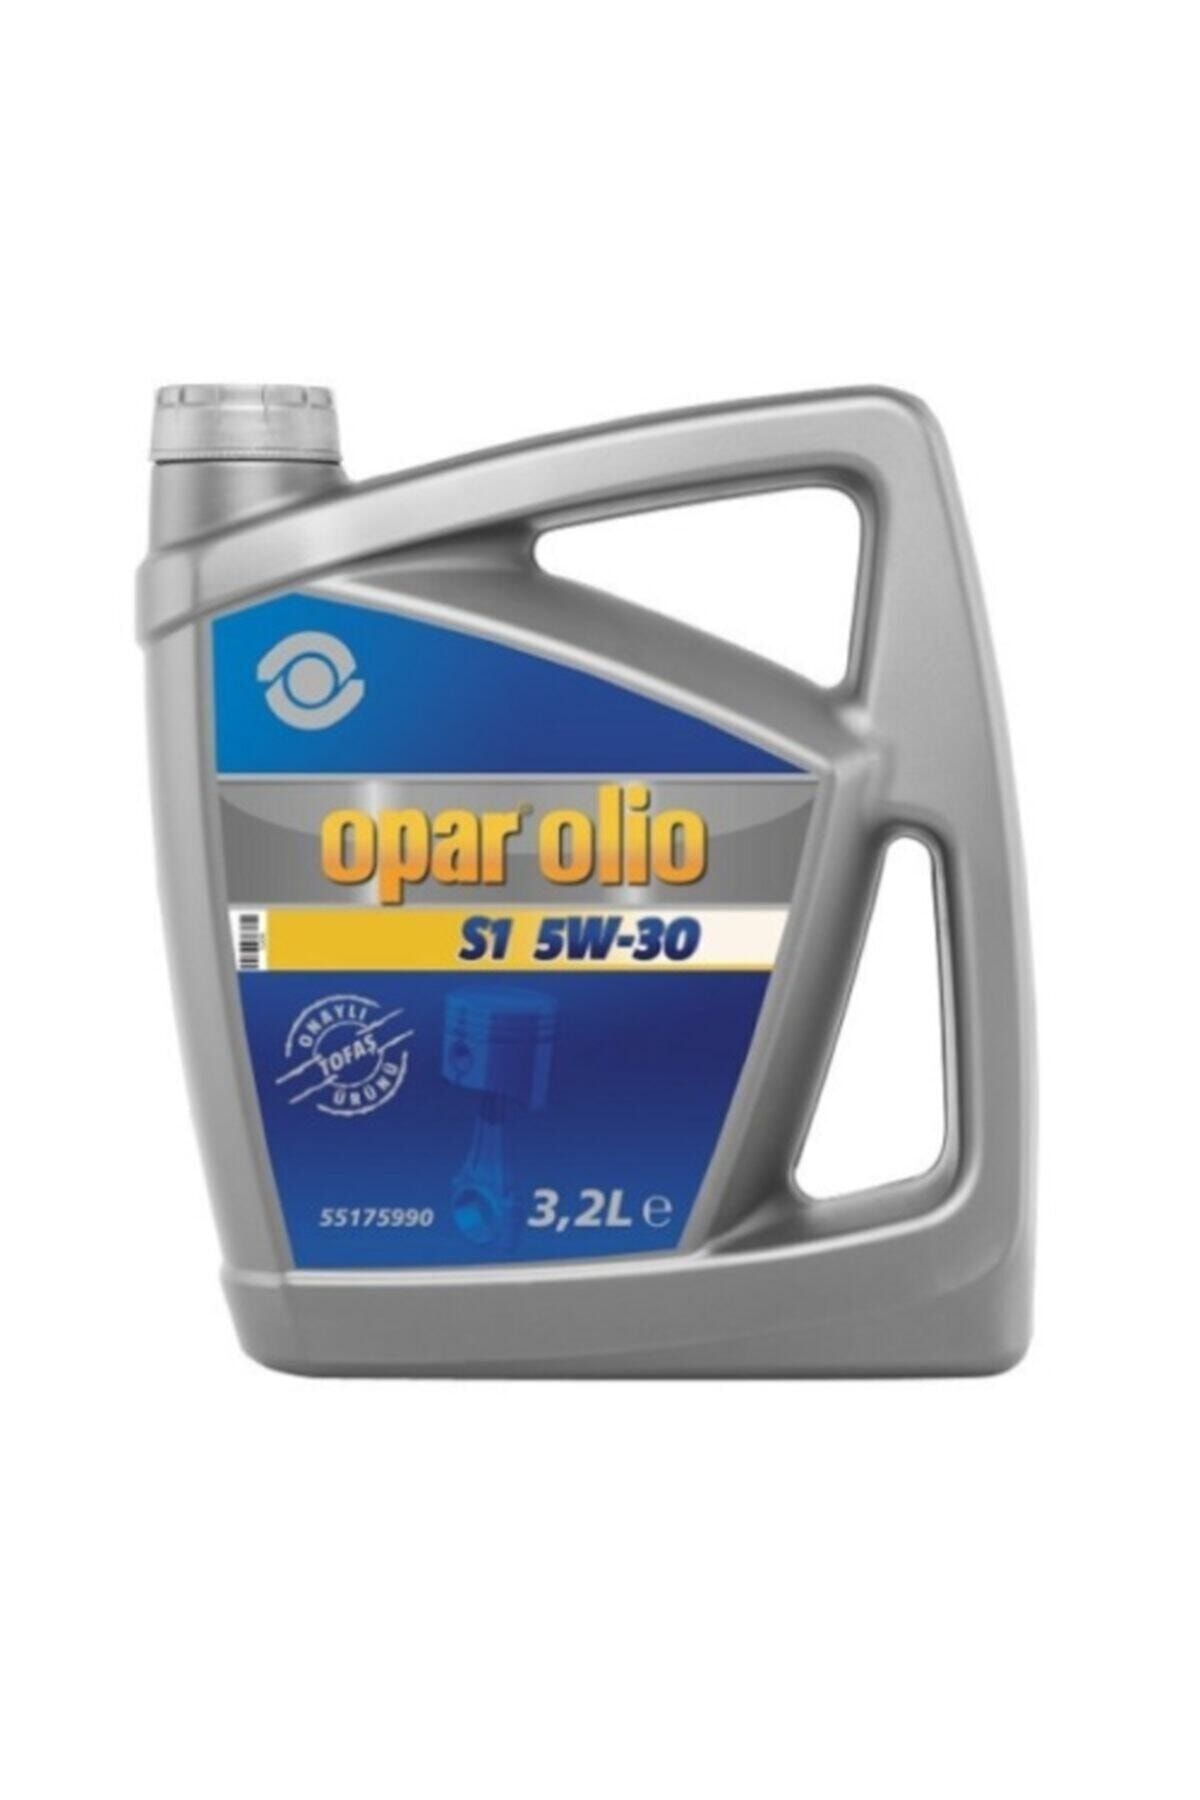 Opar Olio S1 5w-30 3.2 Litre Motor Yağı - 55175990